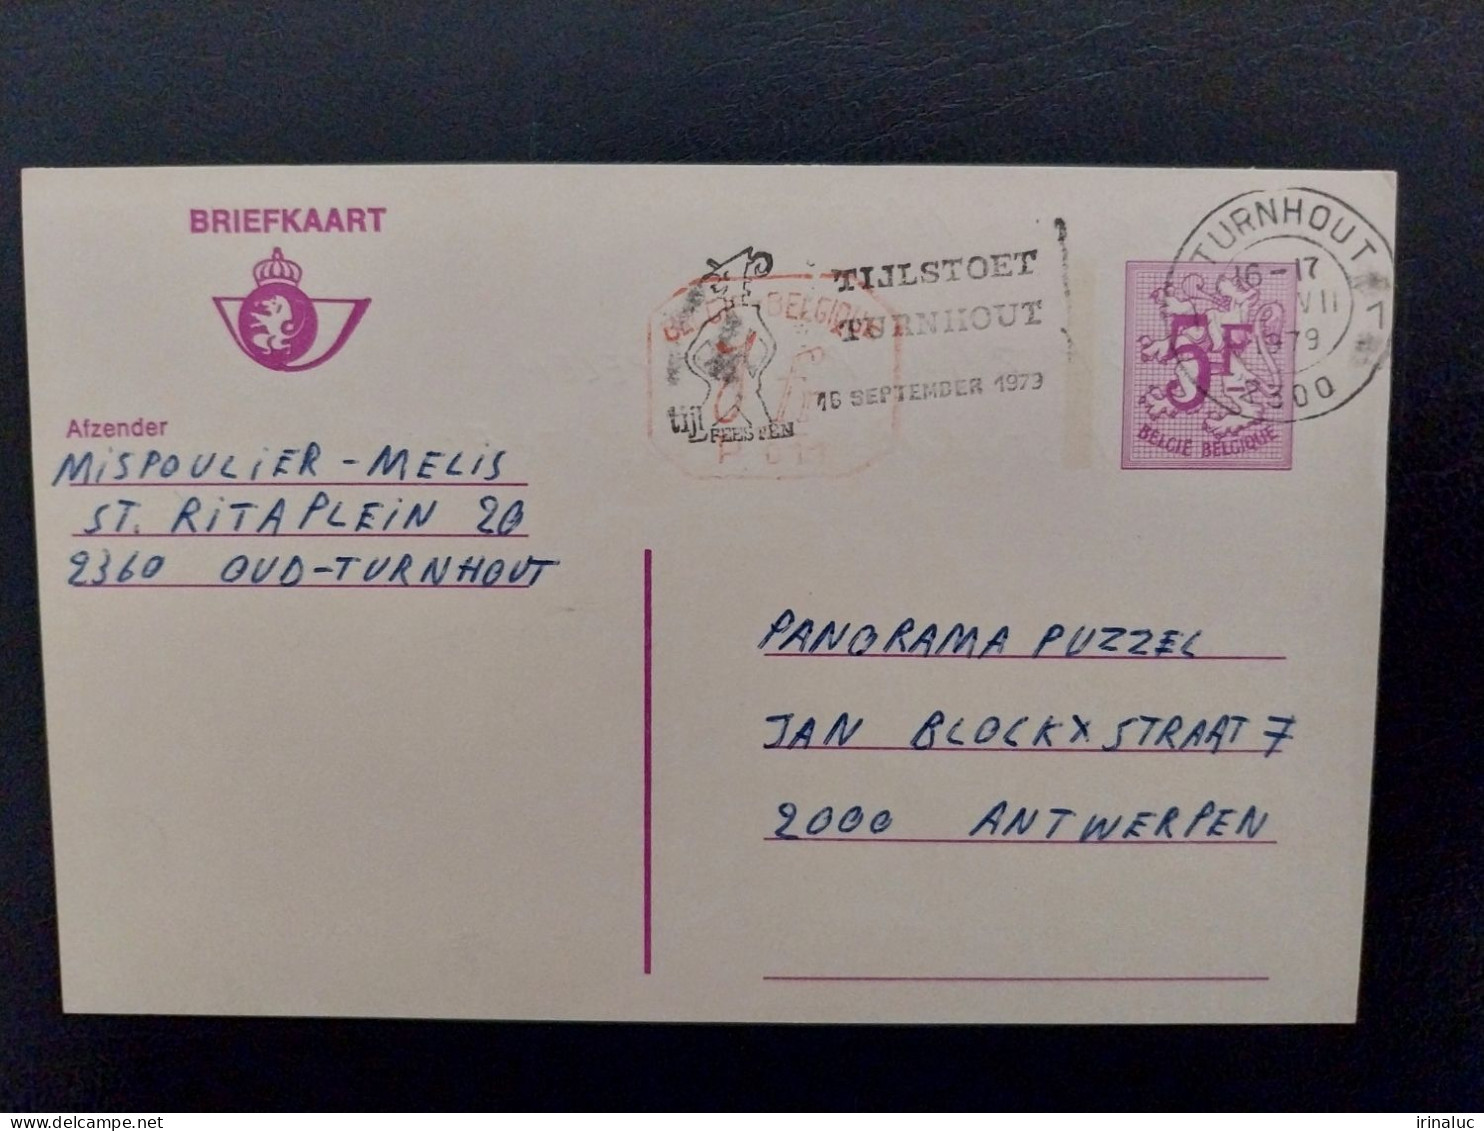 Briefkaart 185-IV M1 P011 - Cartes Postales 1951-..